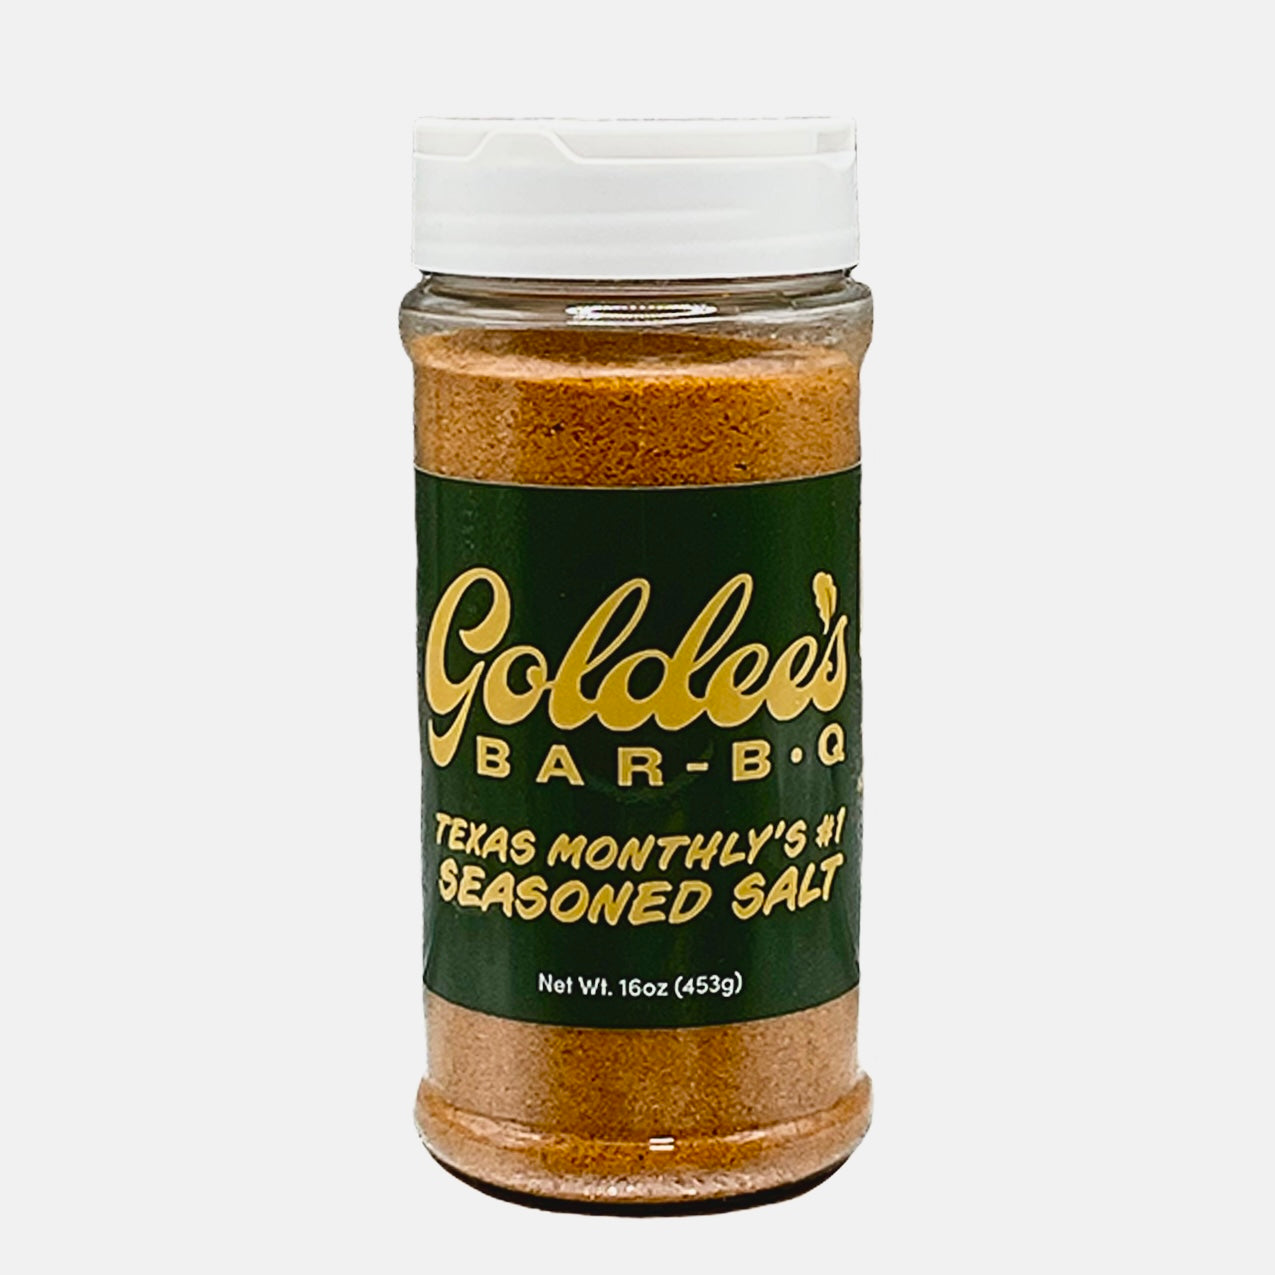 Goldee’s Seasoned Salt